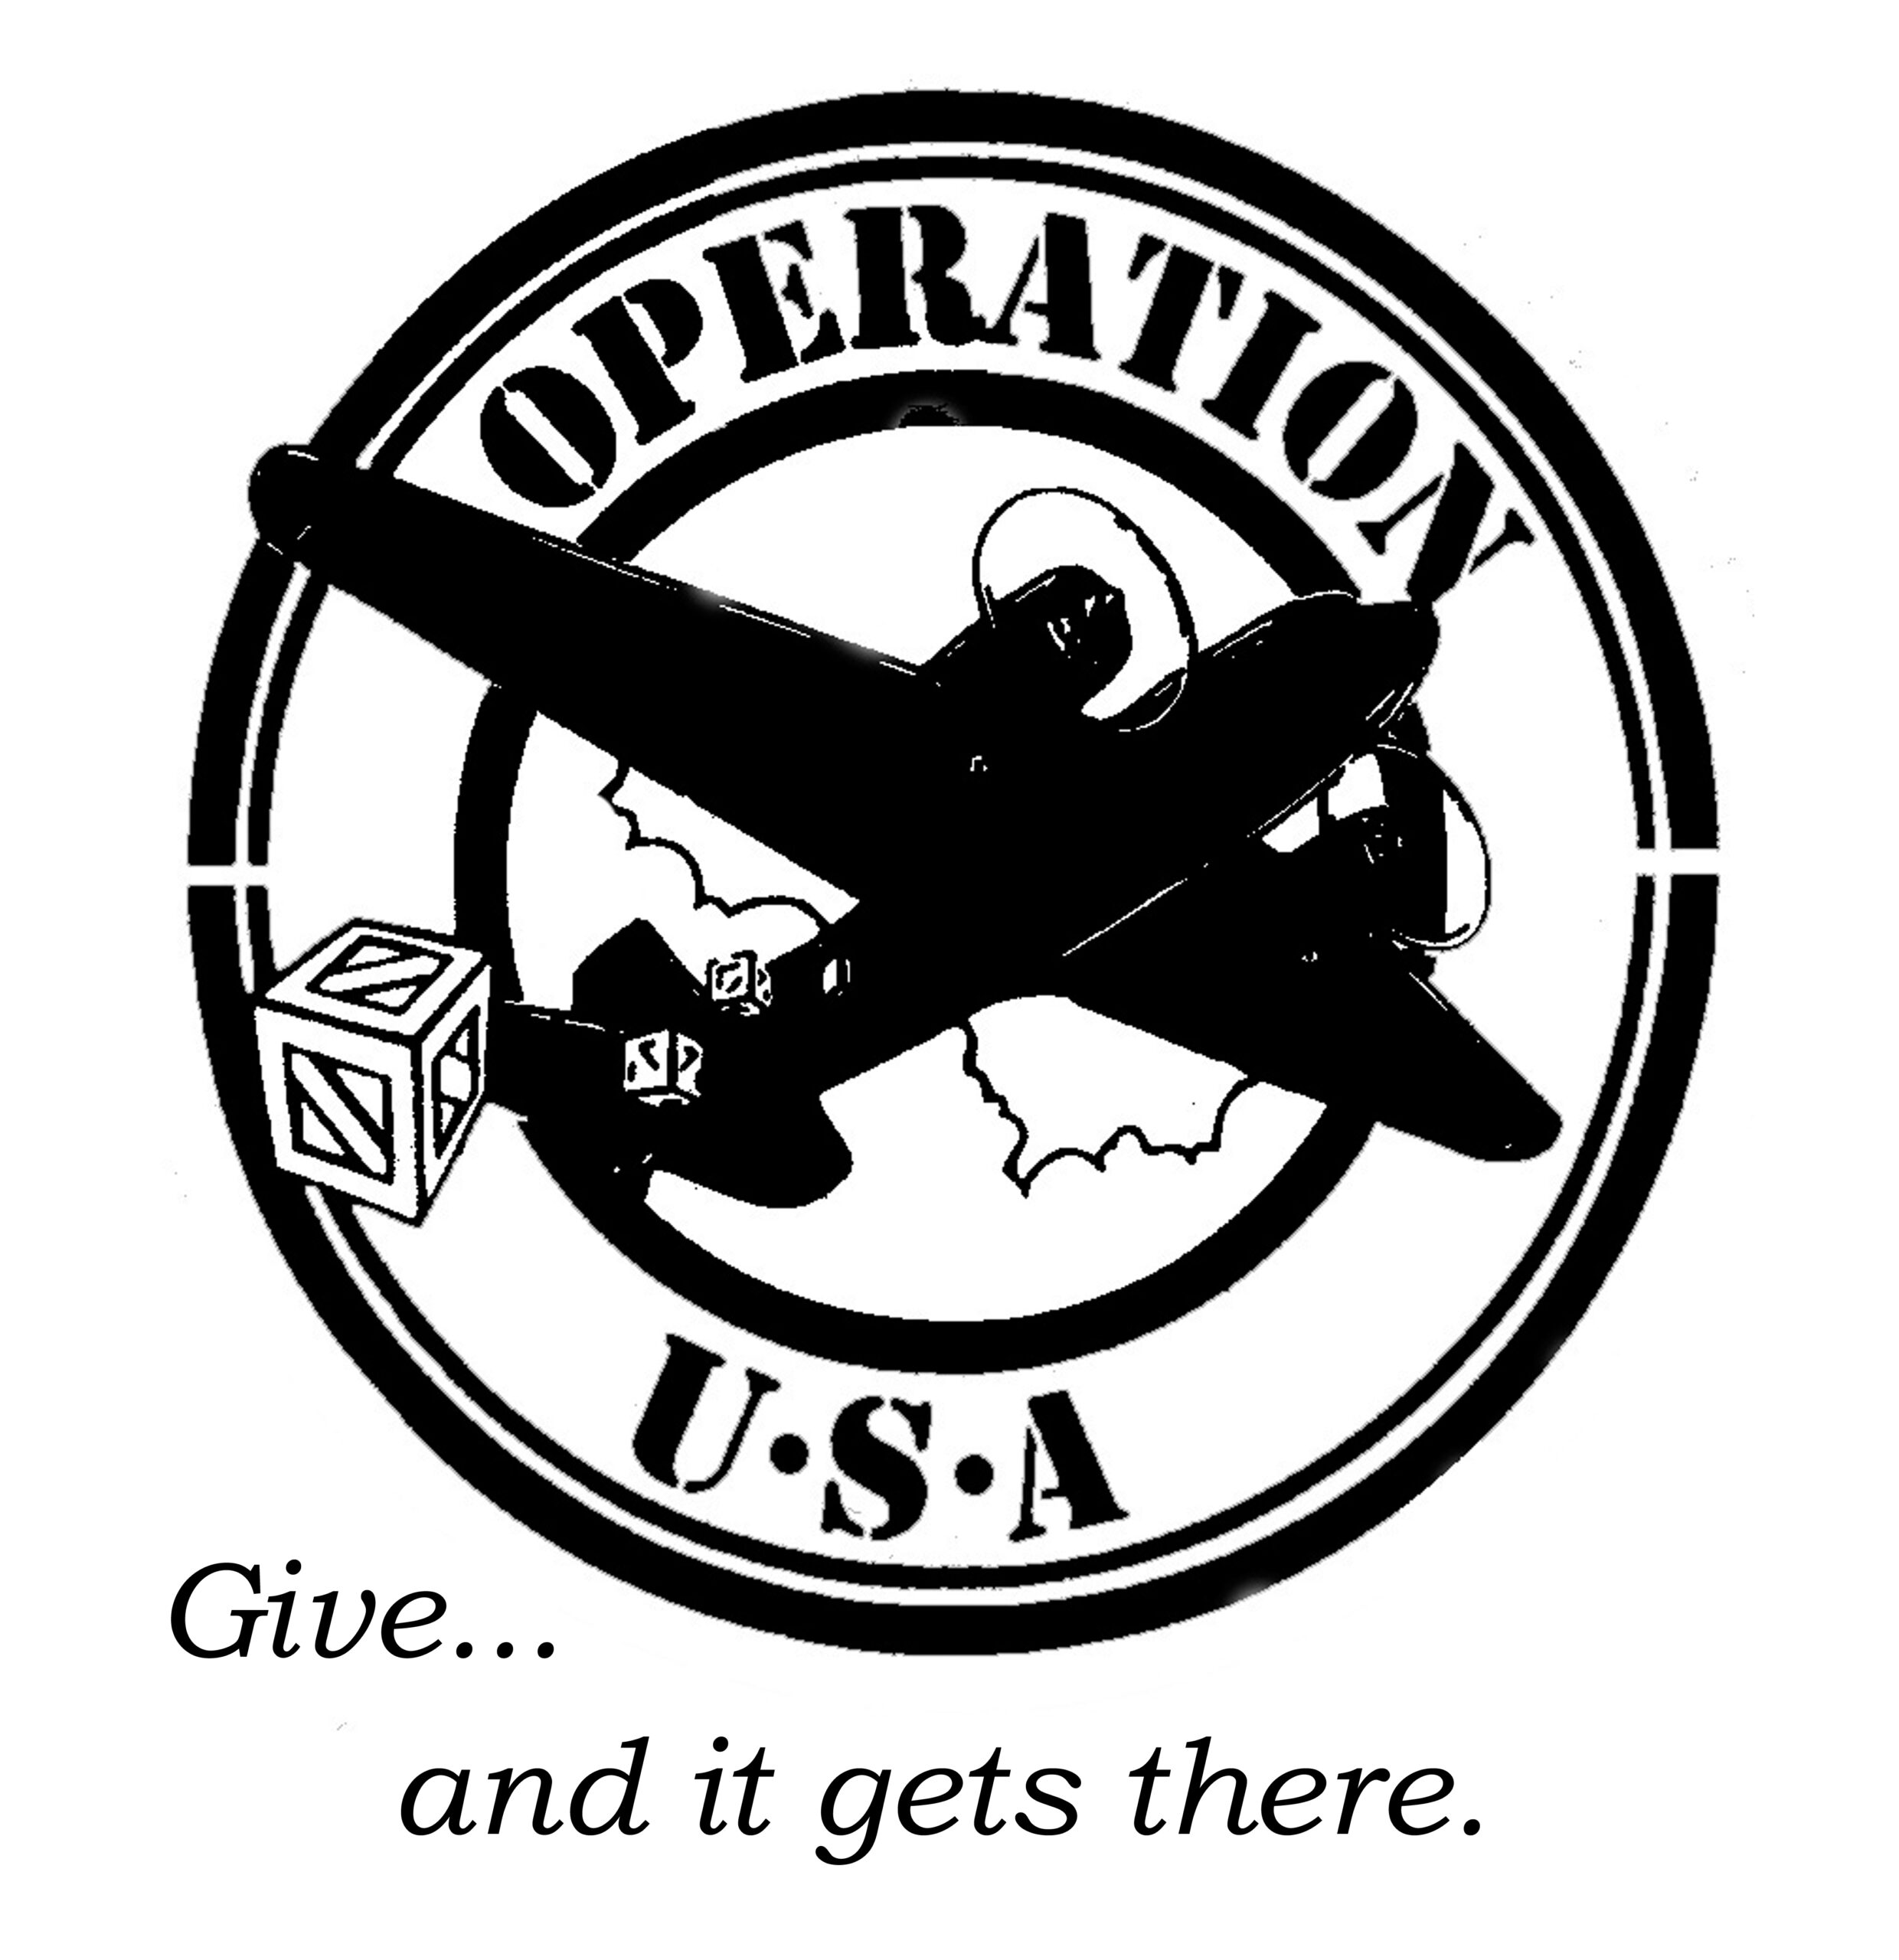 OPERATION USA